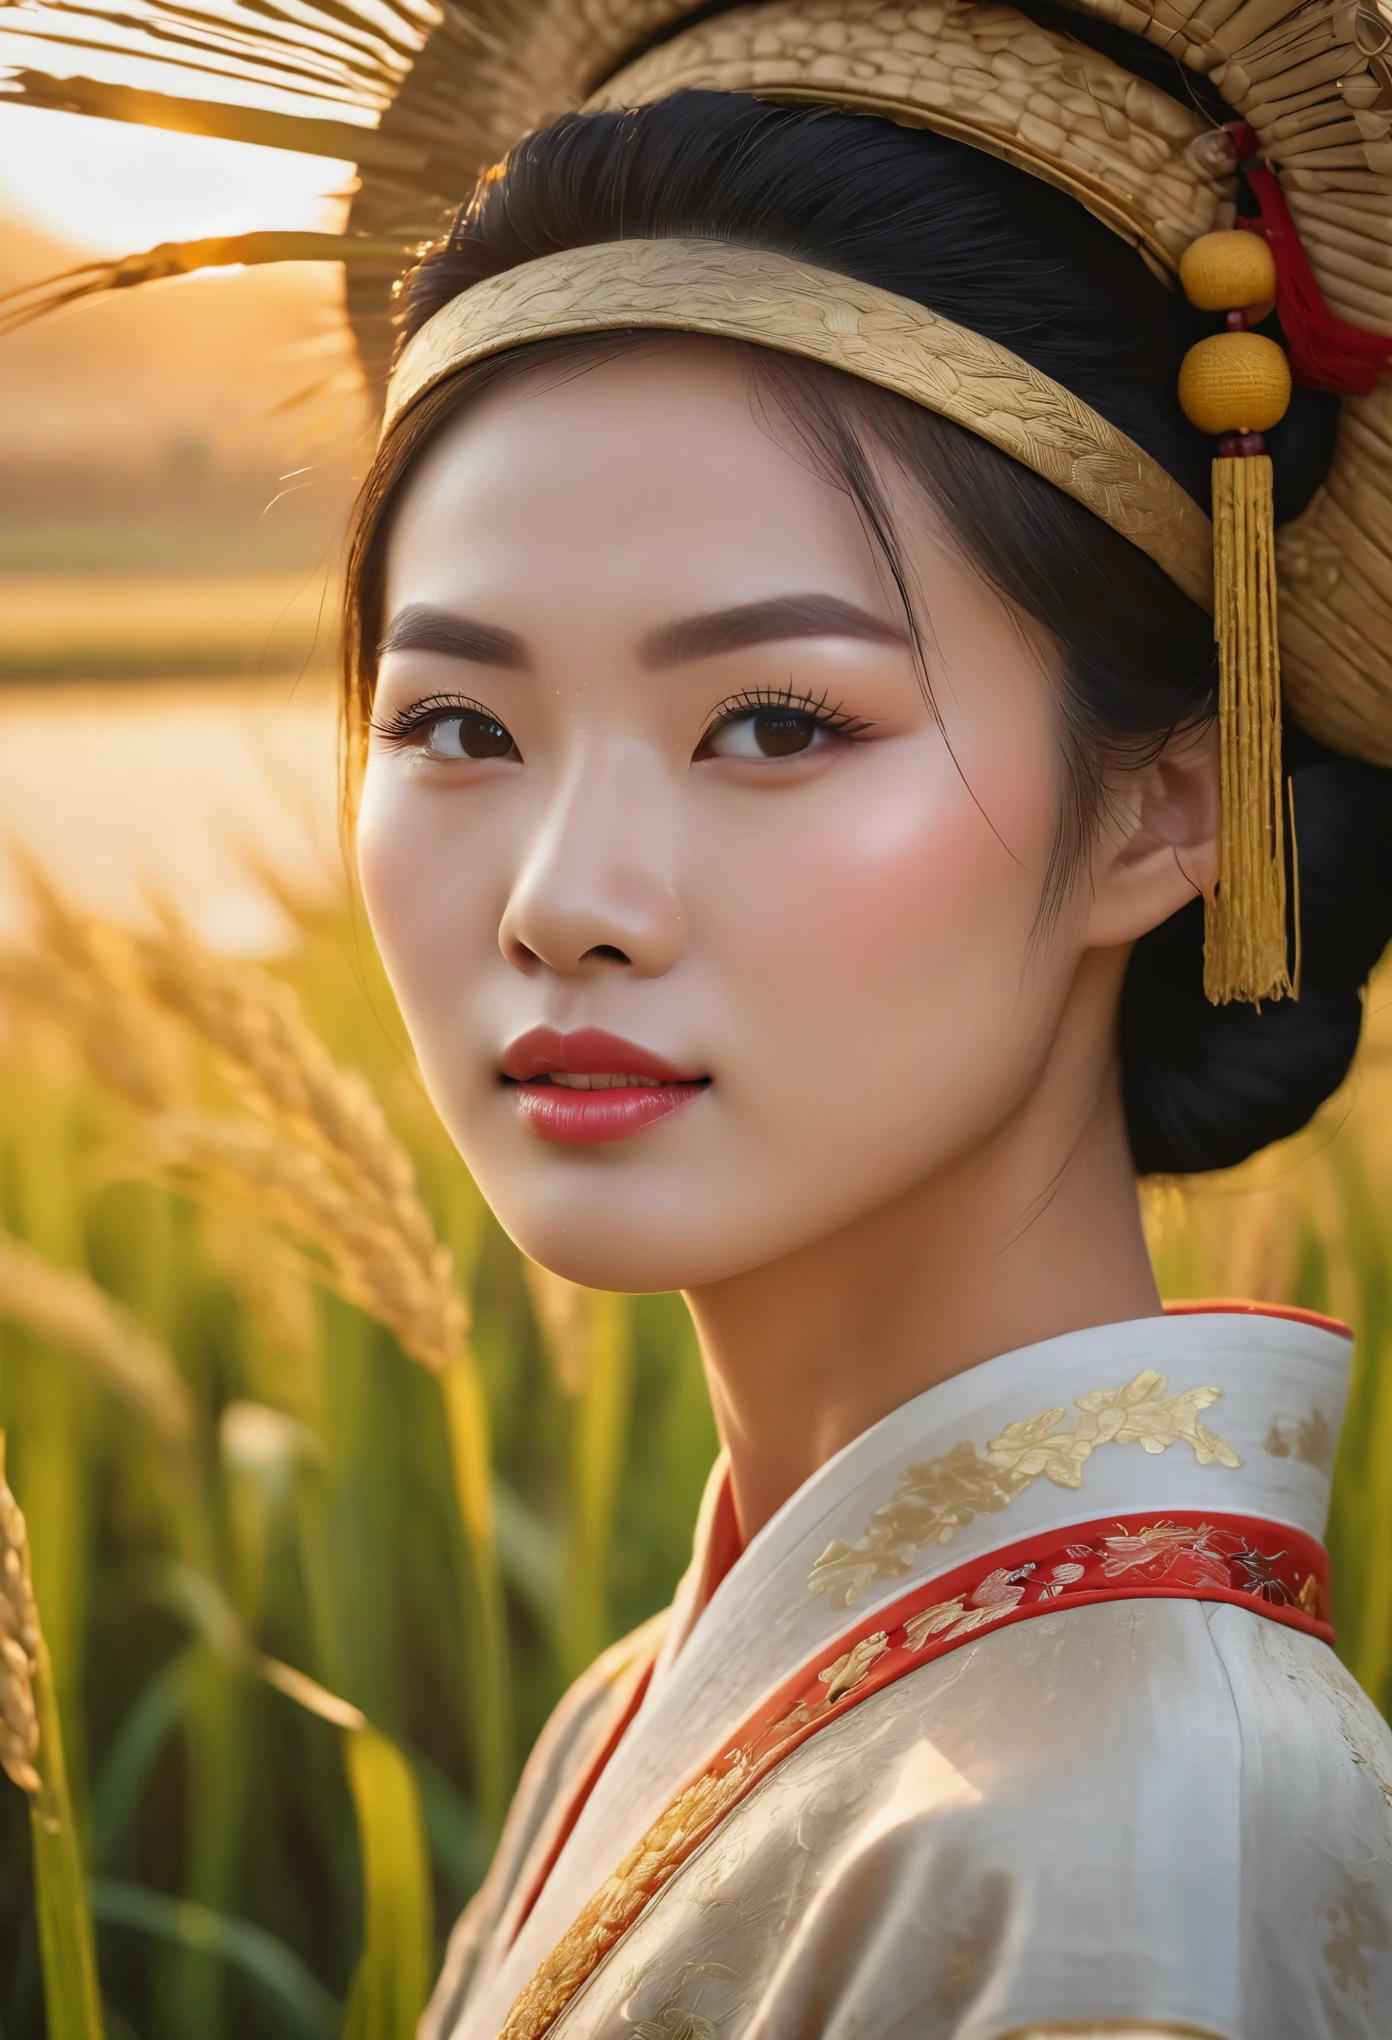 Красивый восход солнца над рисовыми полями в Китае, Китайские фермеры собирают рис, красивые детализированные глаза, красивые детализированные губы, чрезвычайно детализированные глаза и лицо, длинные ресницы, традиционная китайская одежда, безмятежный сельский пейзаж, освещение золотого часа, теплые цветовые тона, мягкий фокус, фотореалистичный, 8К, высокое разрешение, шедевр, ультрадетализированный, Профессиональная фотография, яркие цвета, естественное освещение, кинематографическая композиция